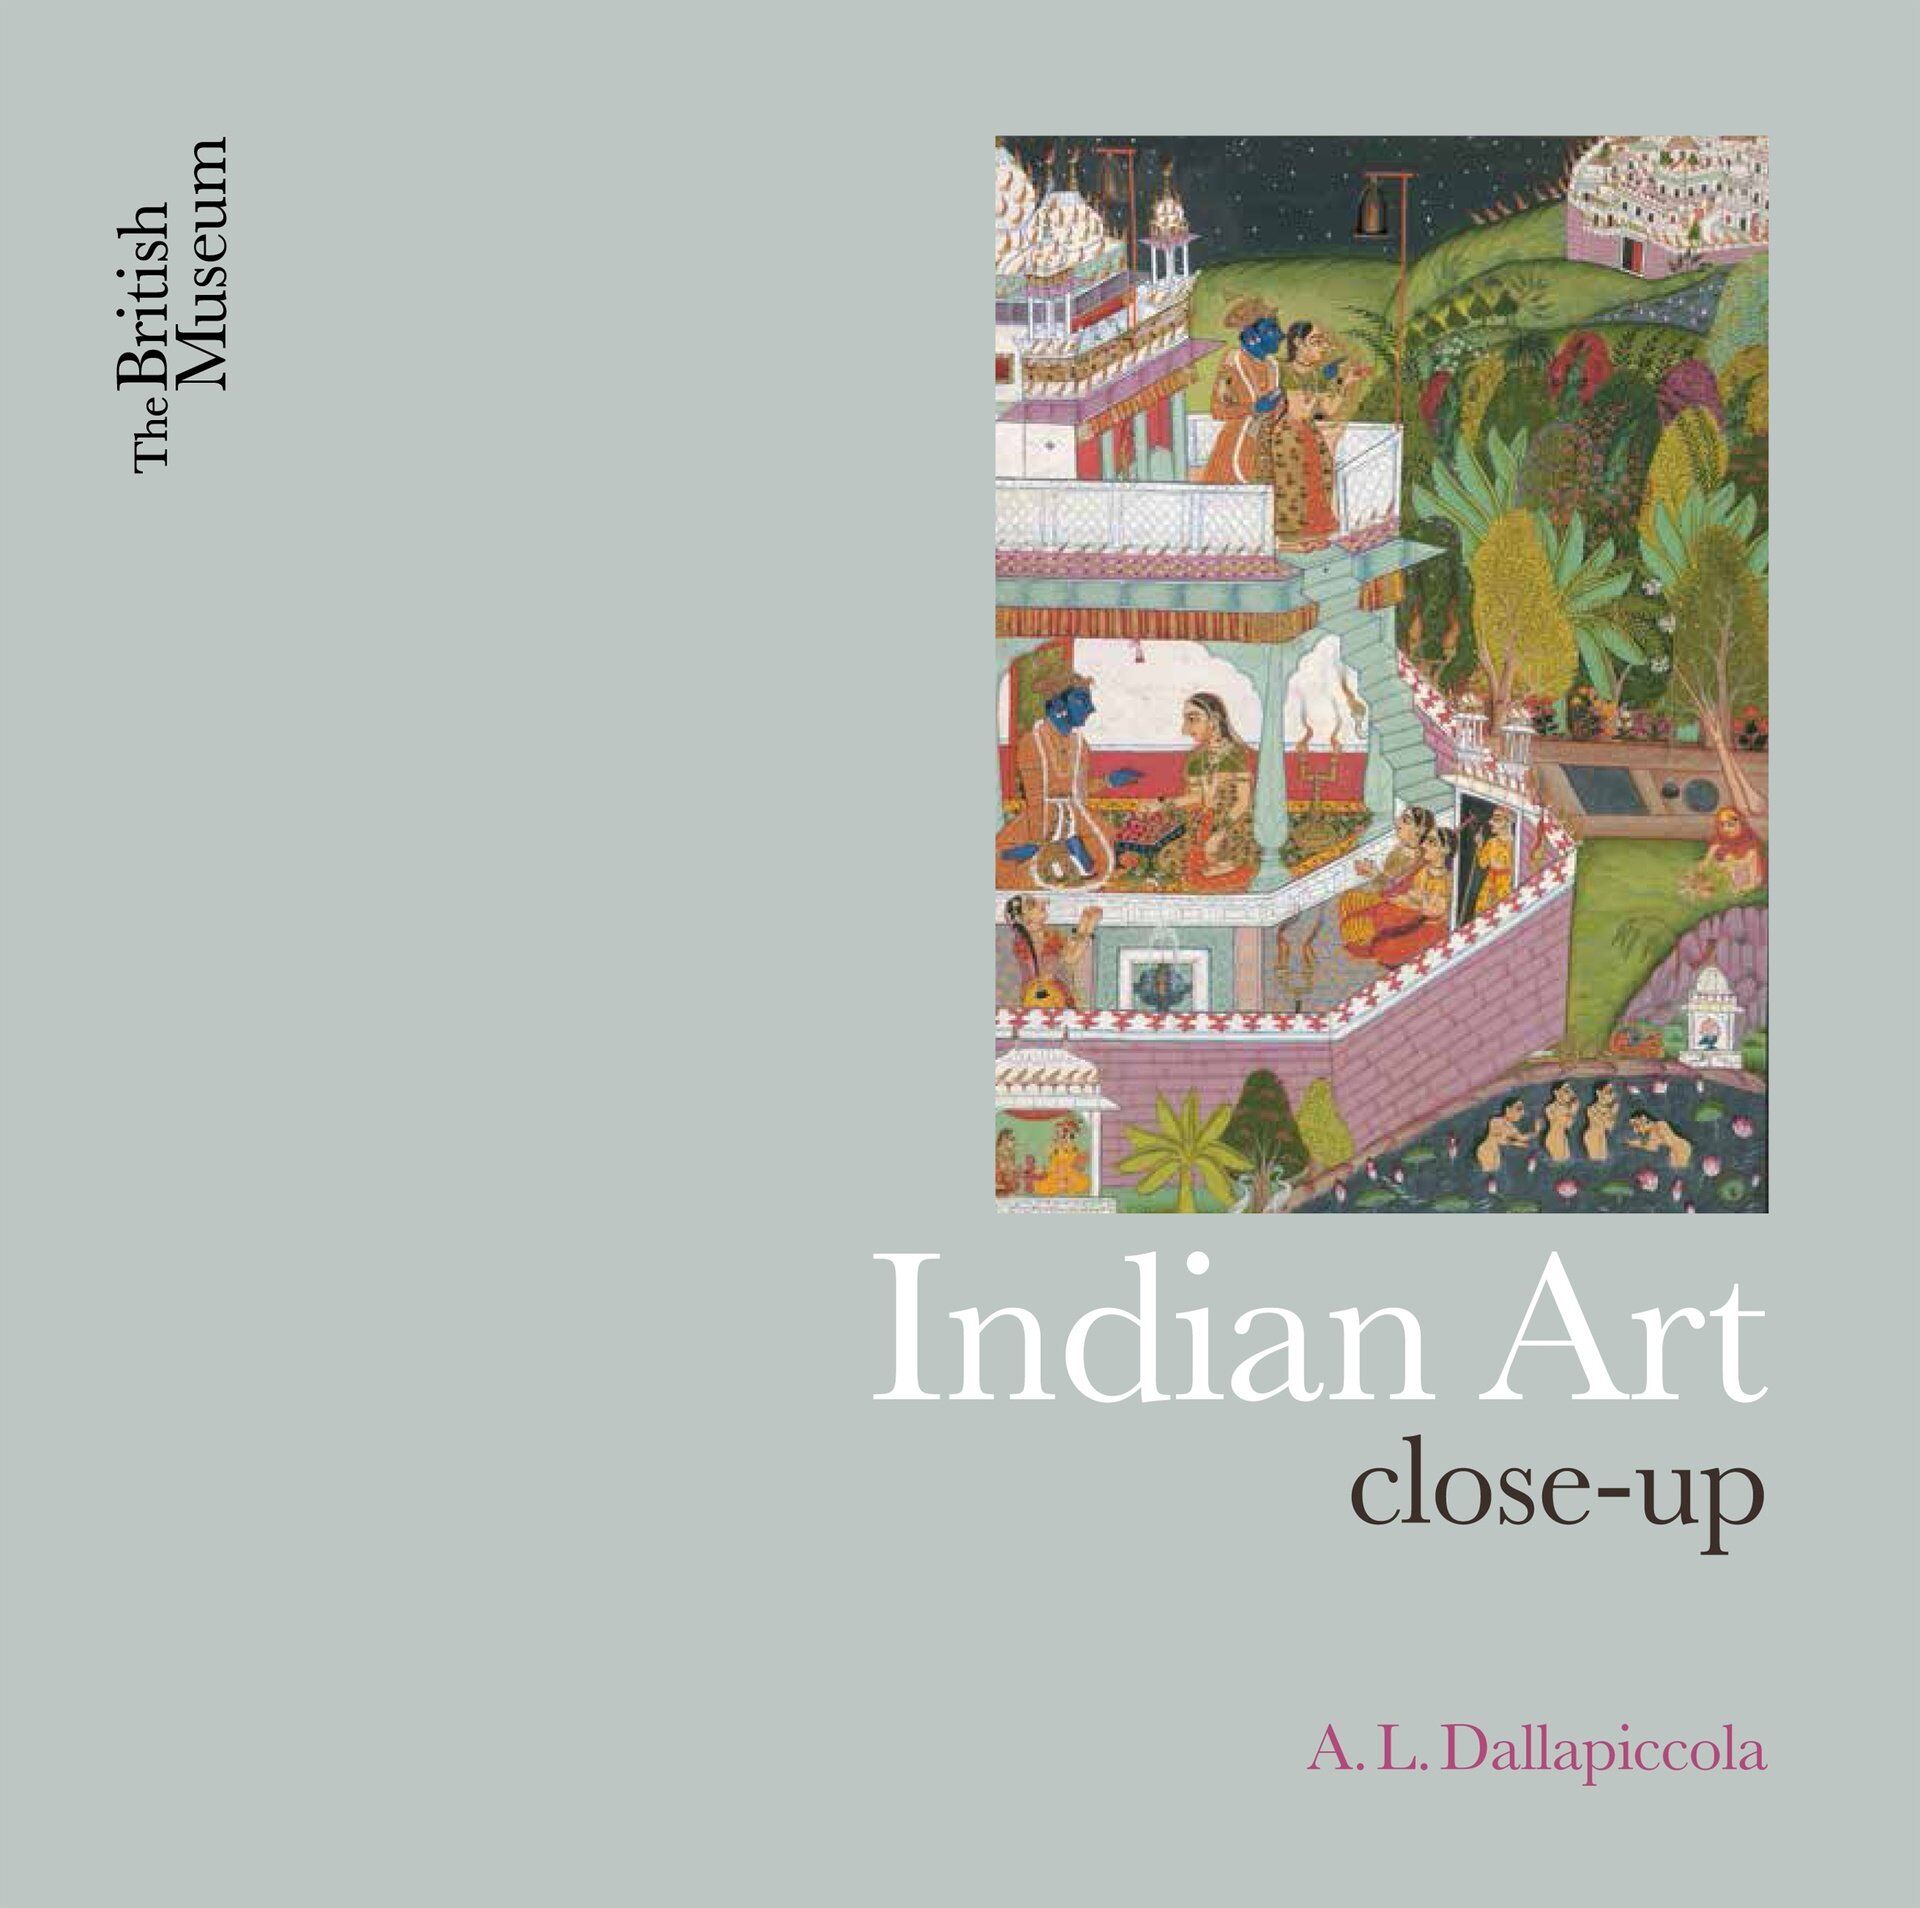 Book: Indian Art close-up